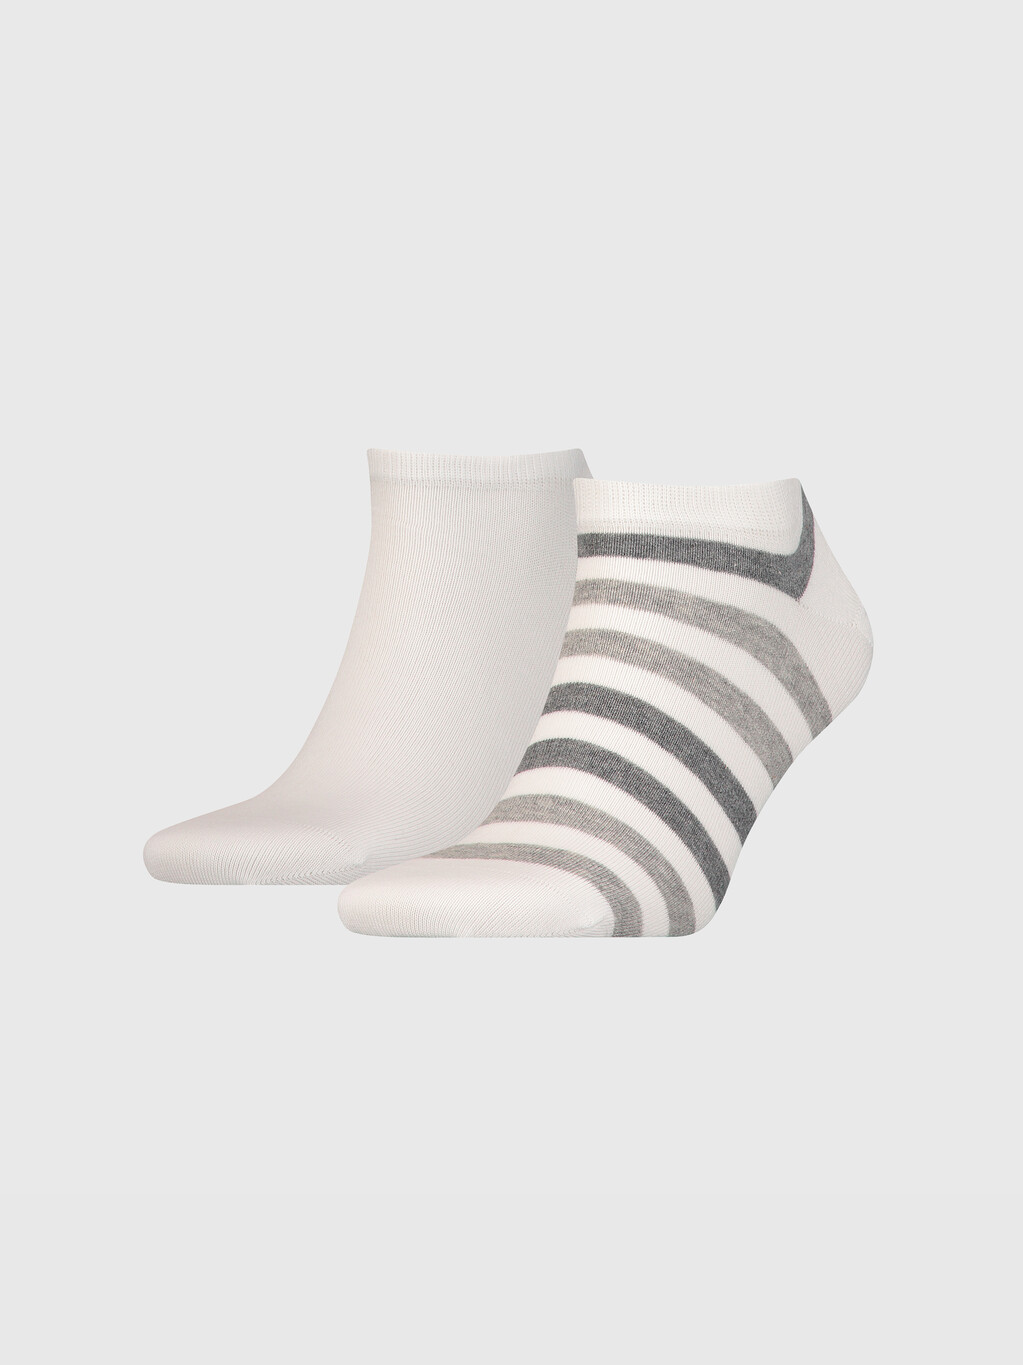 兩色條紋運動鞋型船襪, white, hi-res